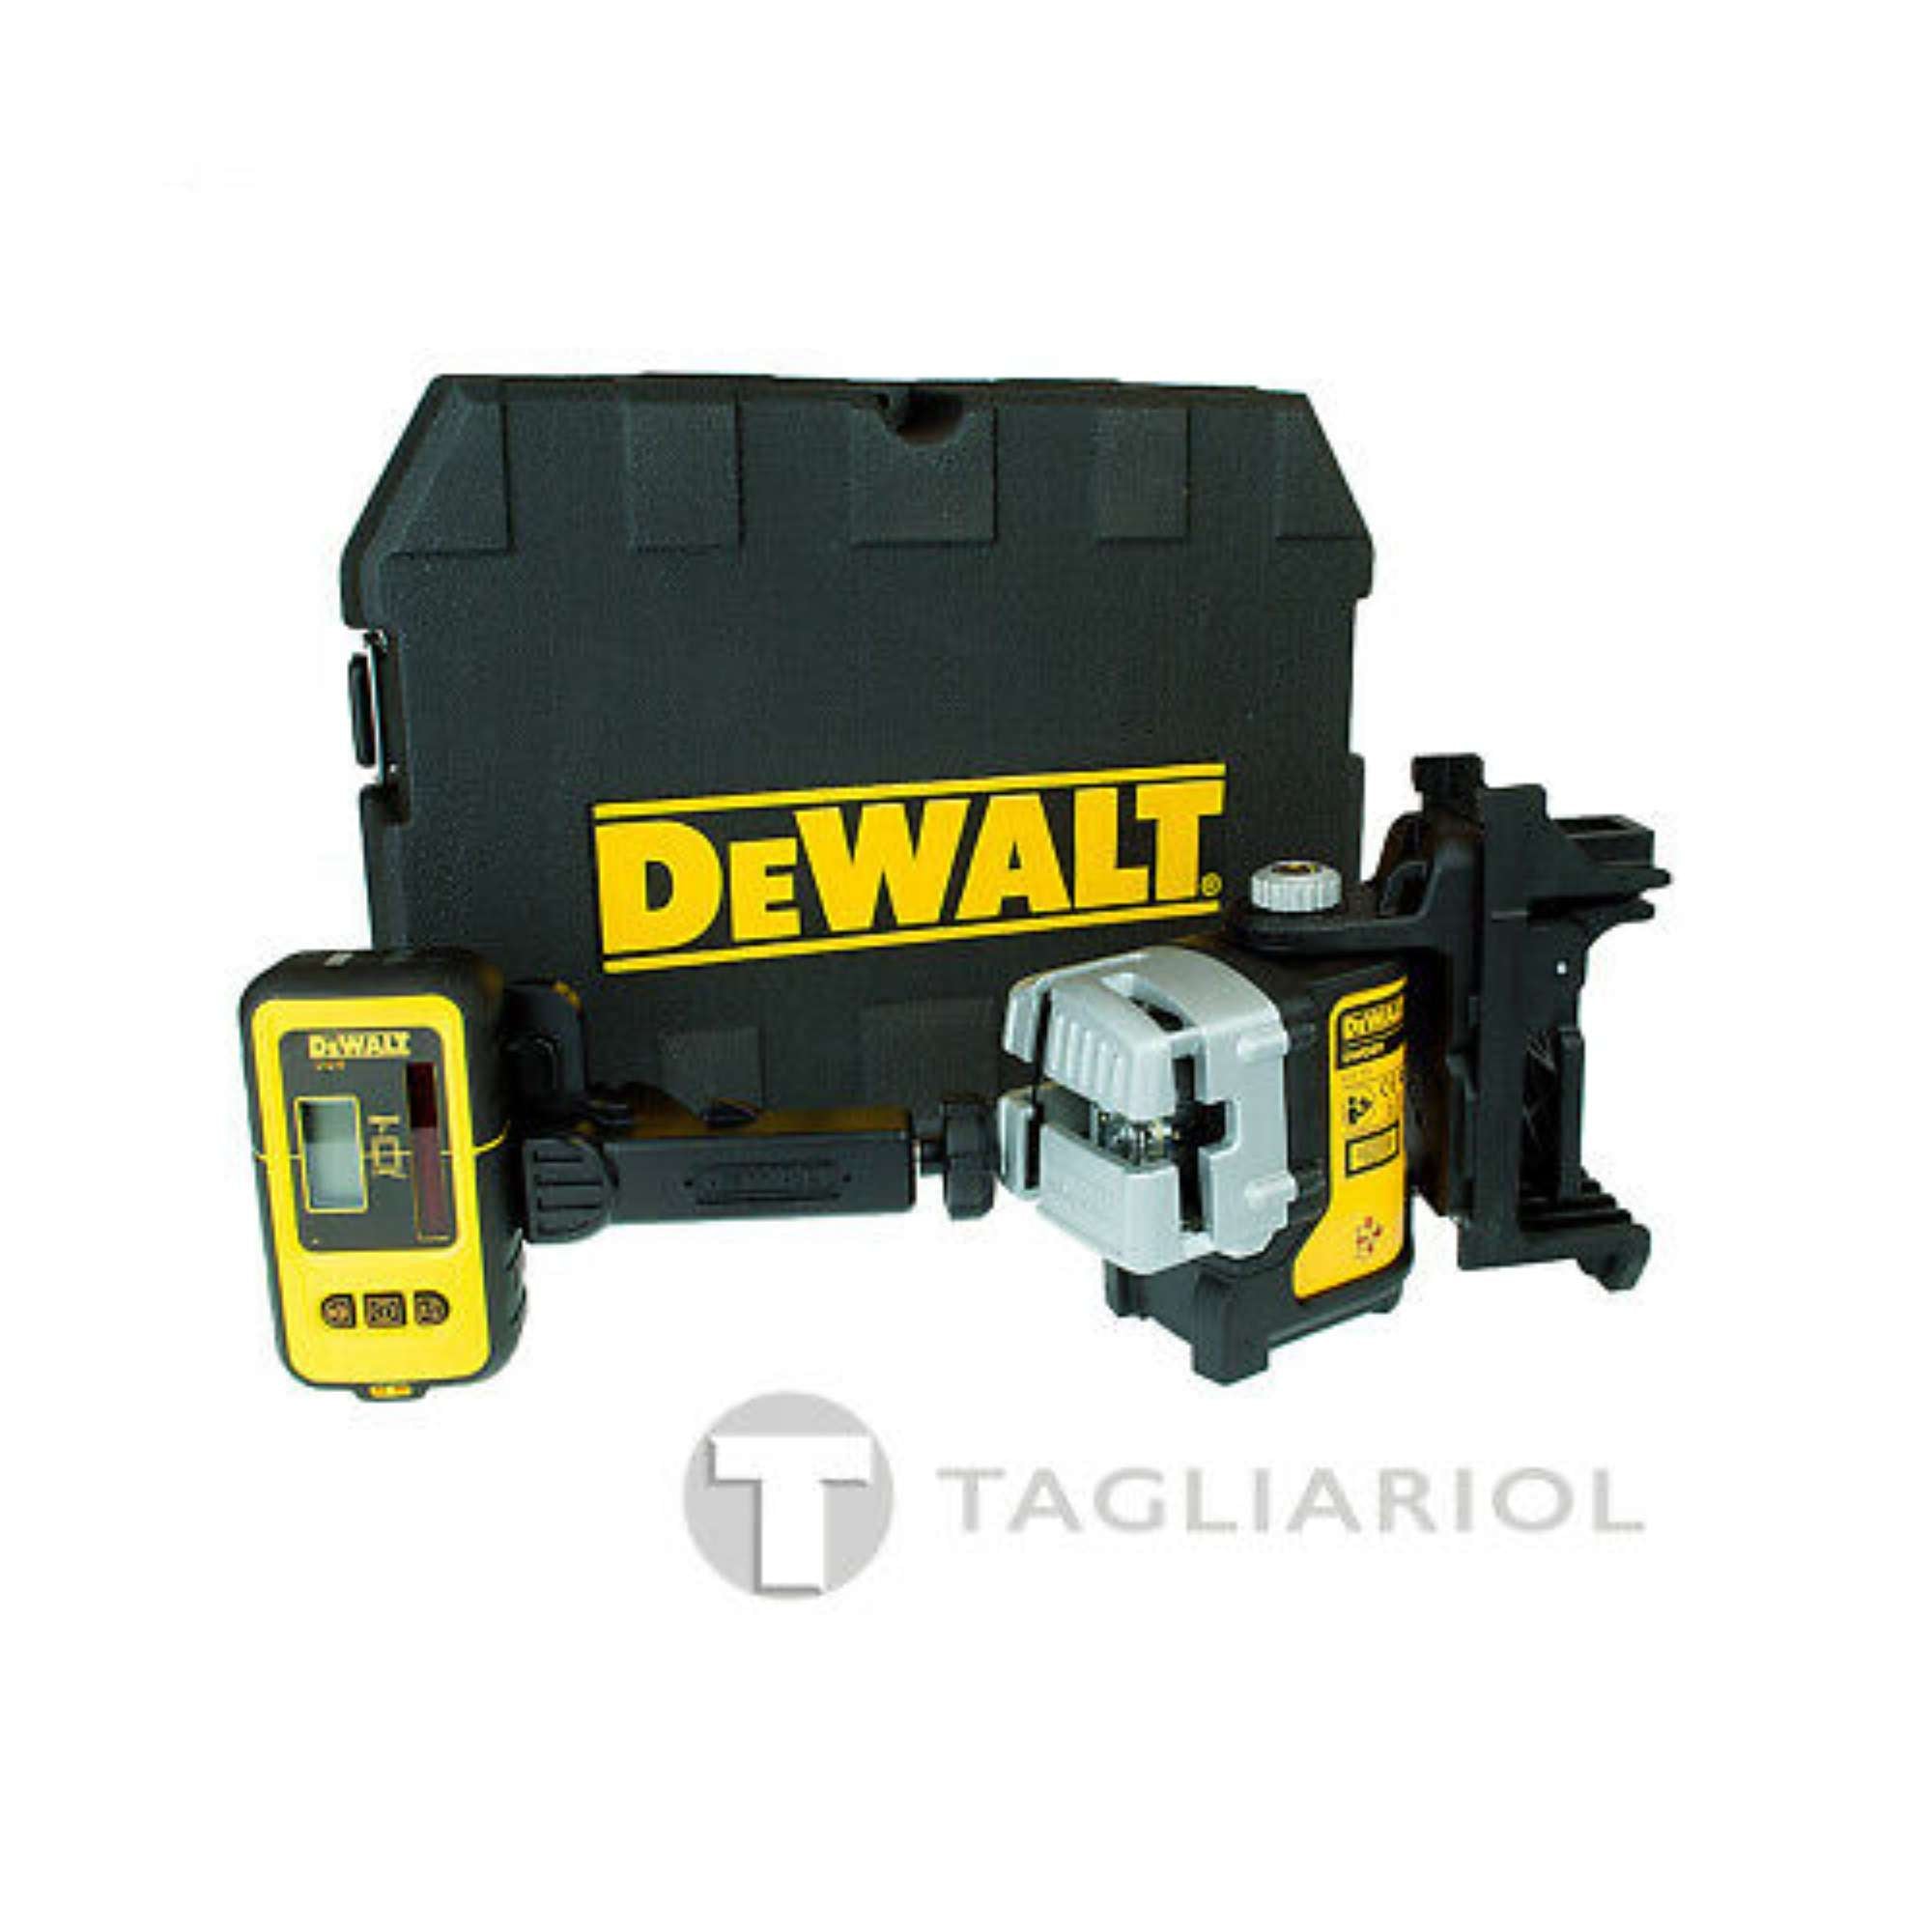 DeWalt DW089KD tracciatore laser multilinee con rilevatore DE089 + valigetta